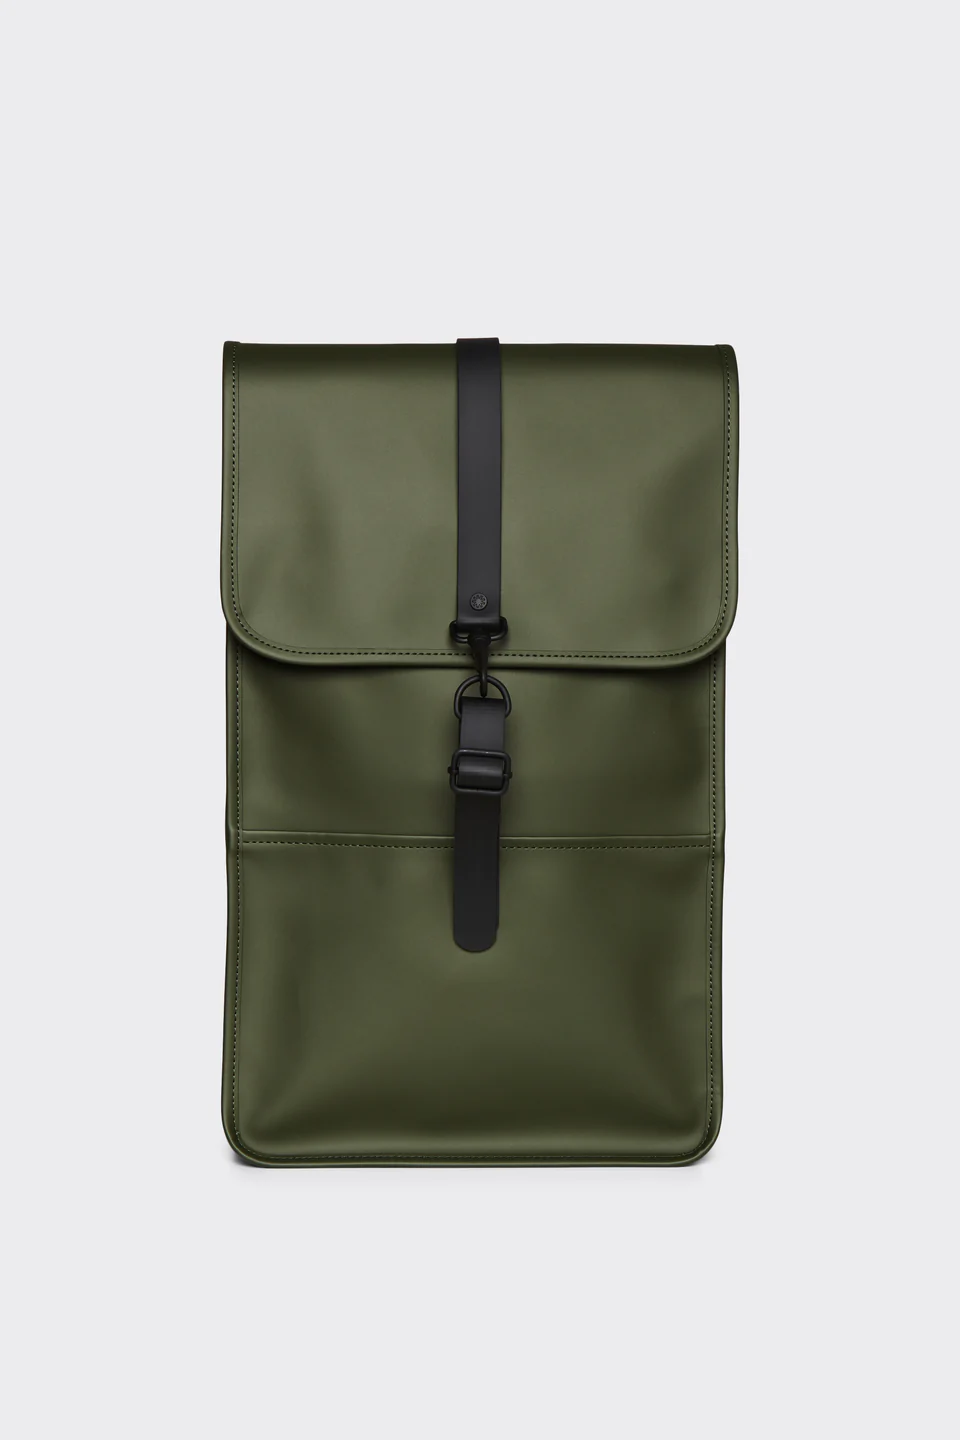 rains-backpack-12200-evergreen